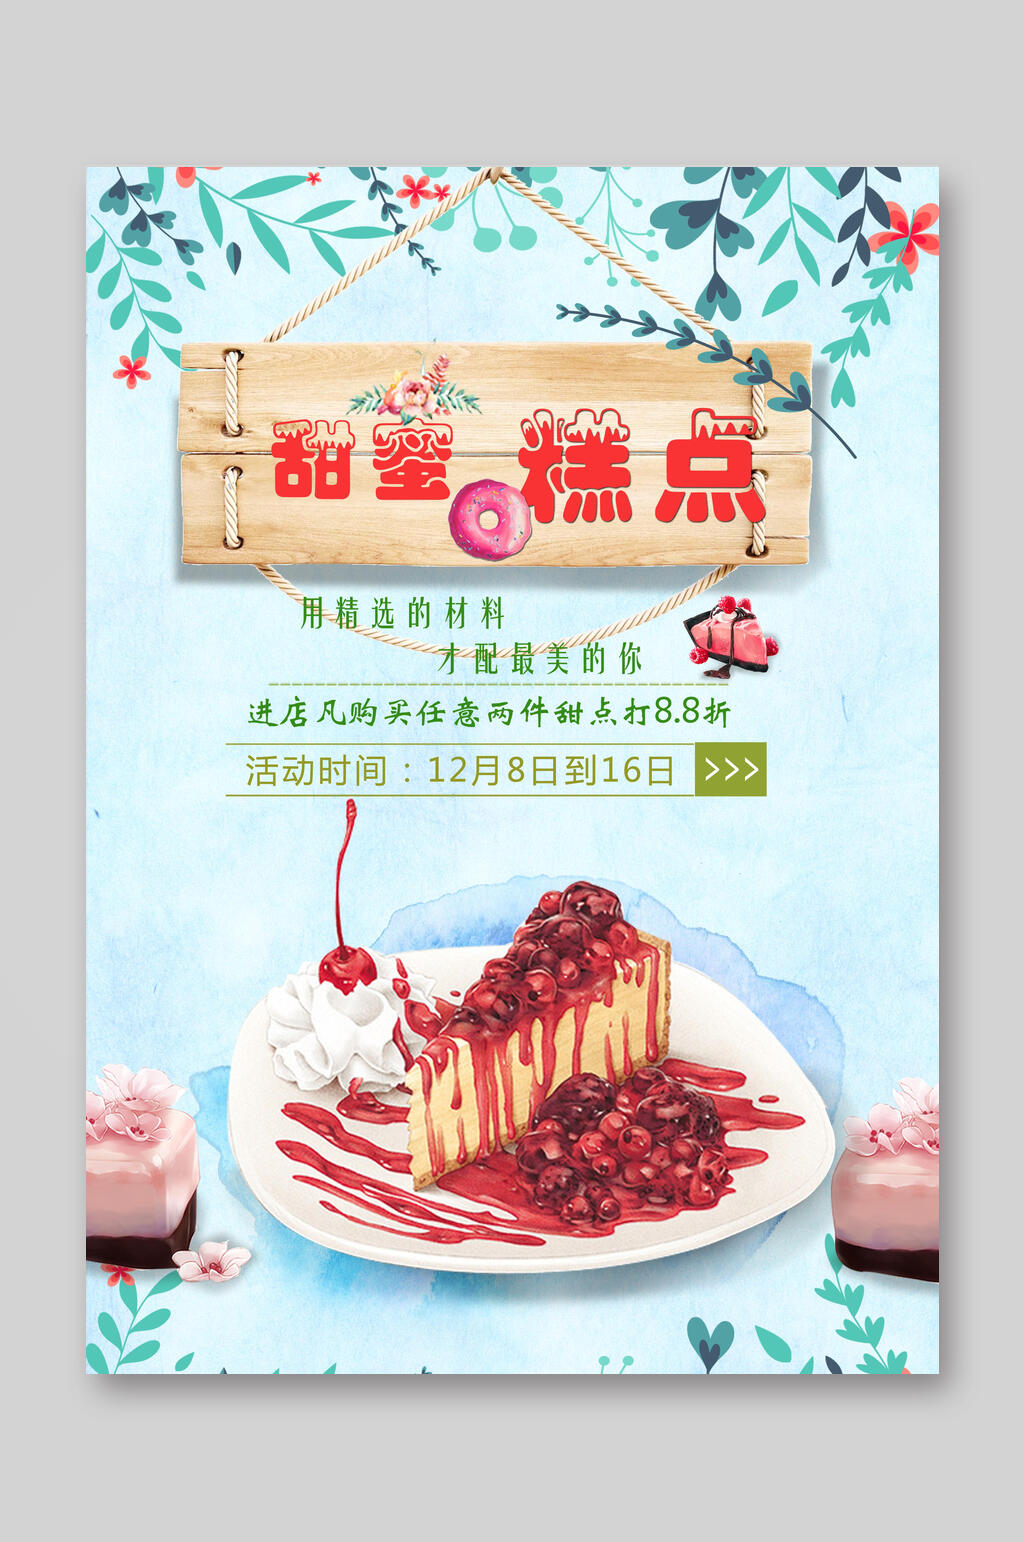 草莓蛋糕创意潮流宣传海报立即下载浪漫小清新美食蛋糕店甜品上新宣传